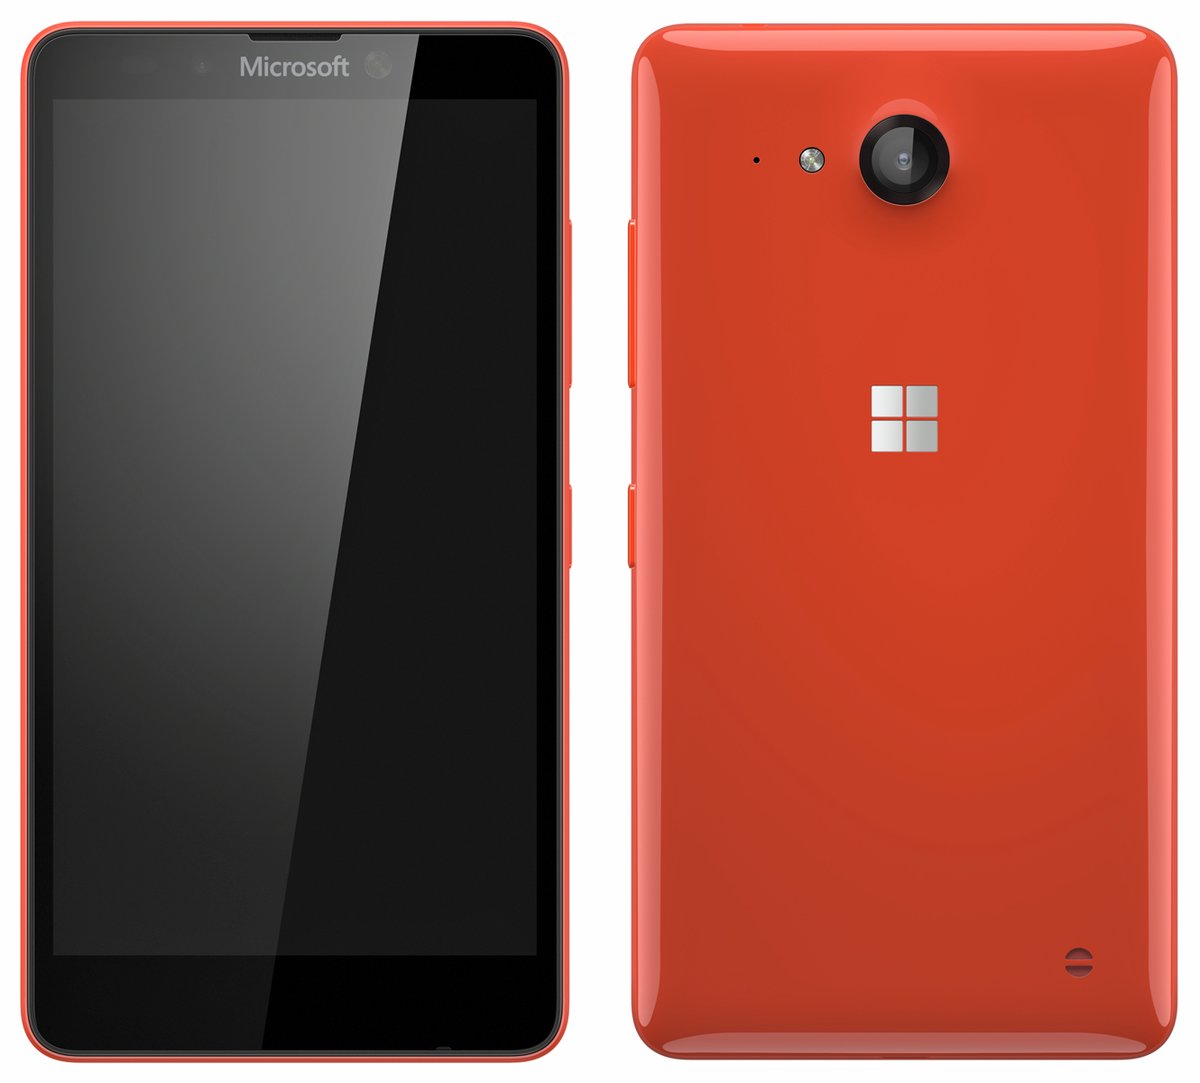 Câștiguri Microsoft T2 FY17: veniturile din telefoane au scăzut cu 81%, posibil mai puțin de 1 milion de Lumia vândute